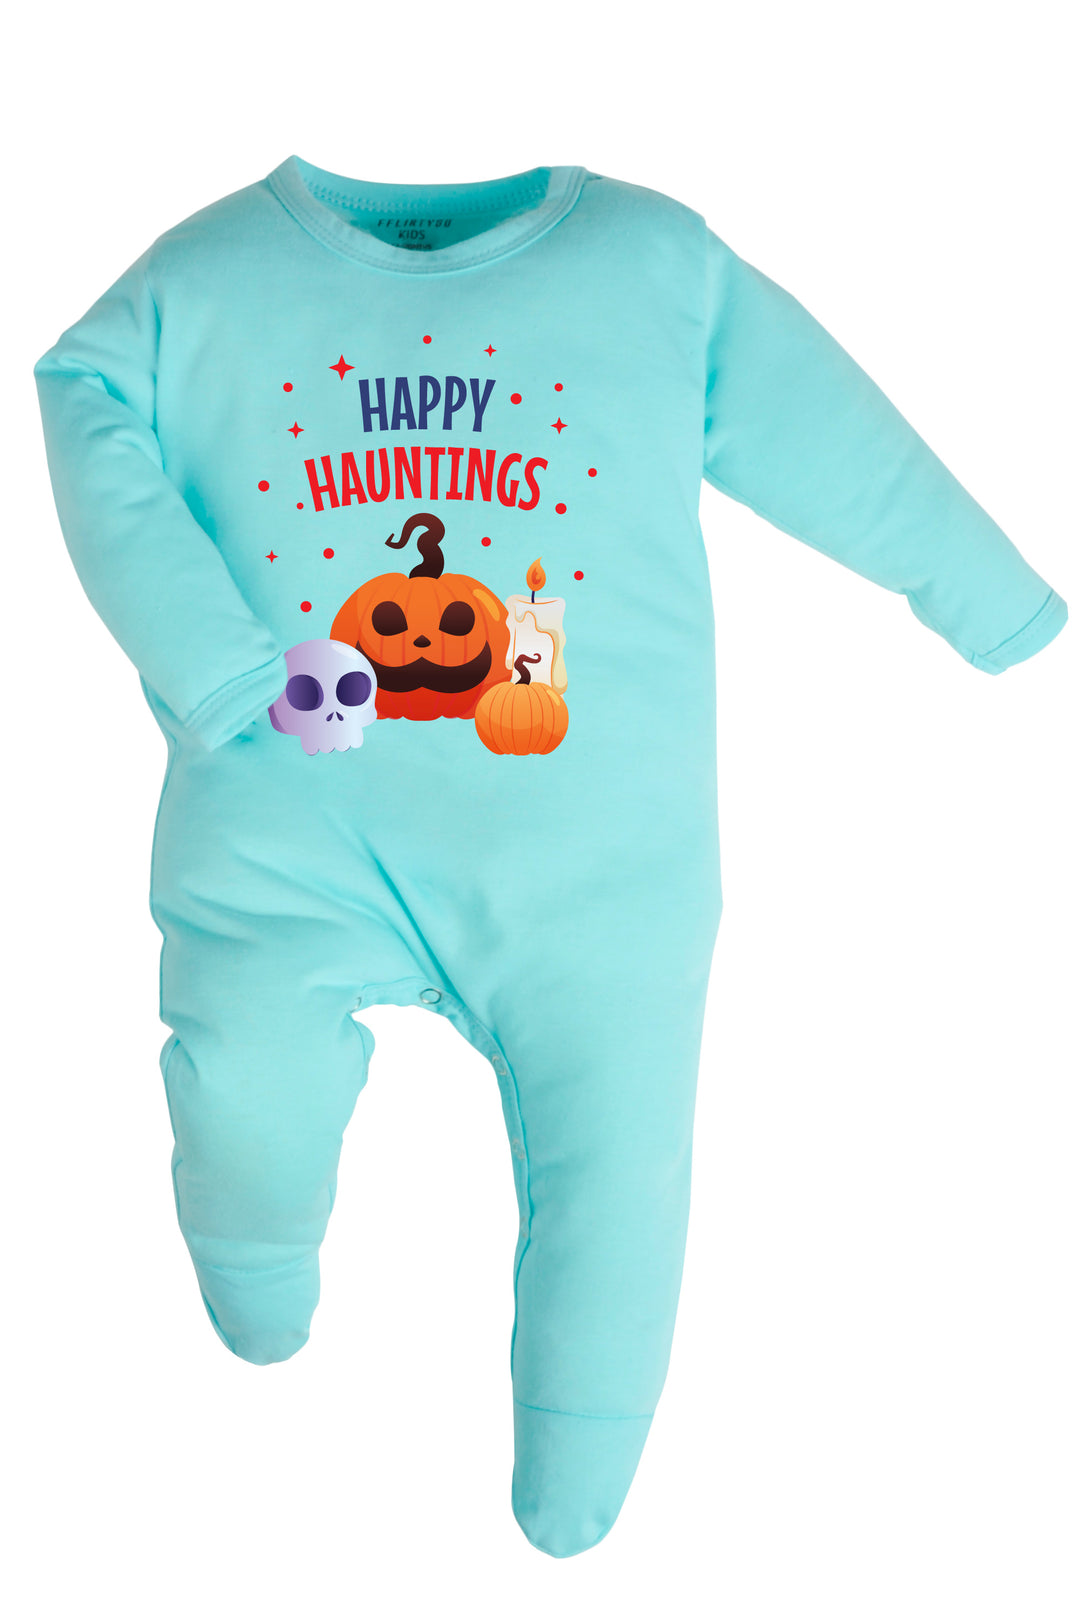 Happy Hauntings Baby Romper | Onesies